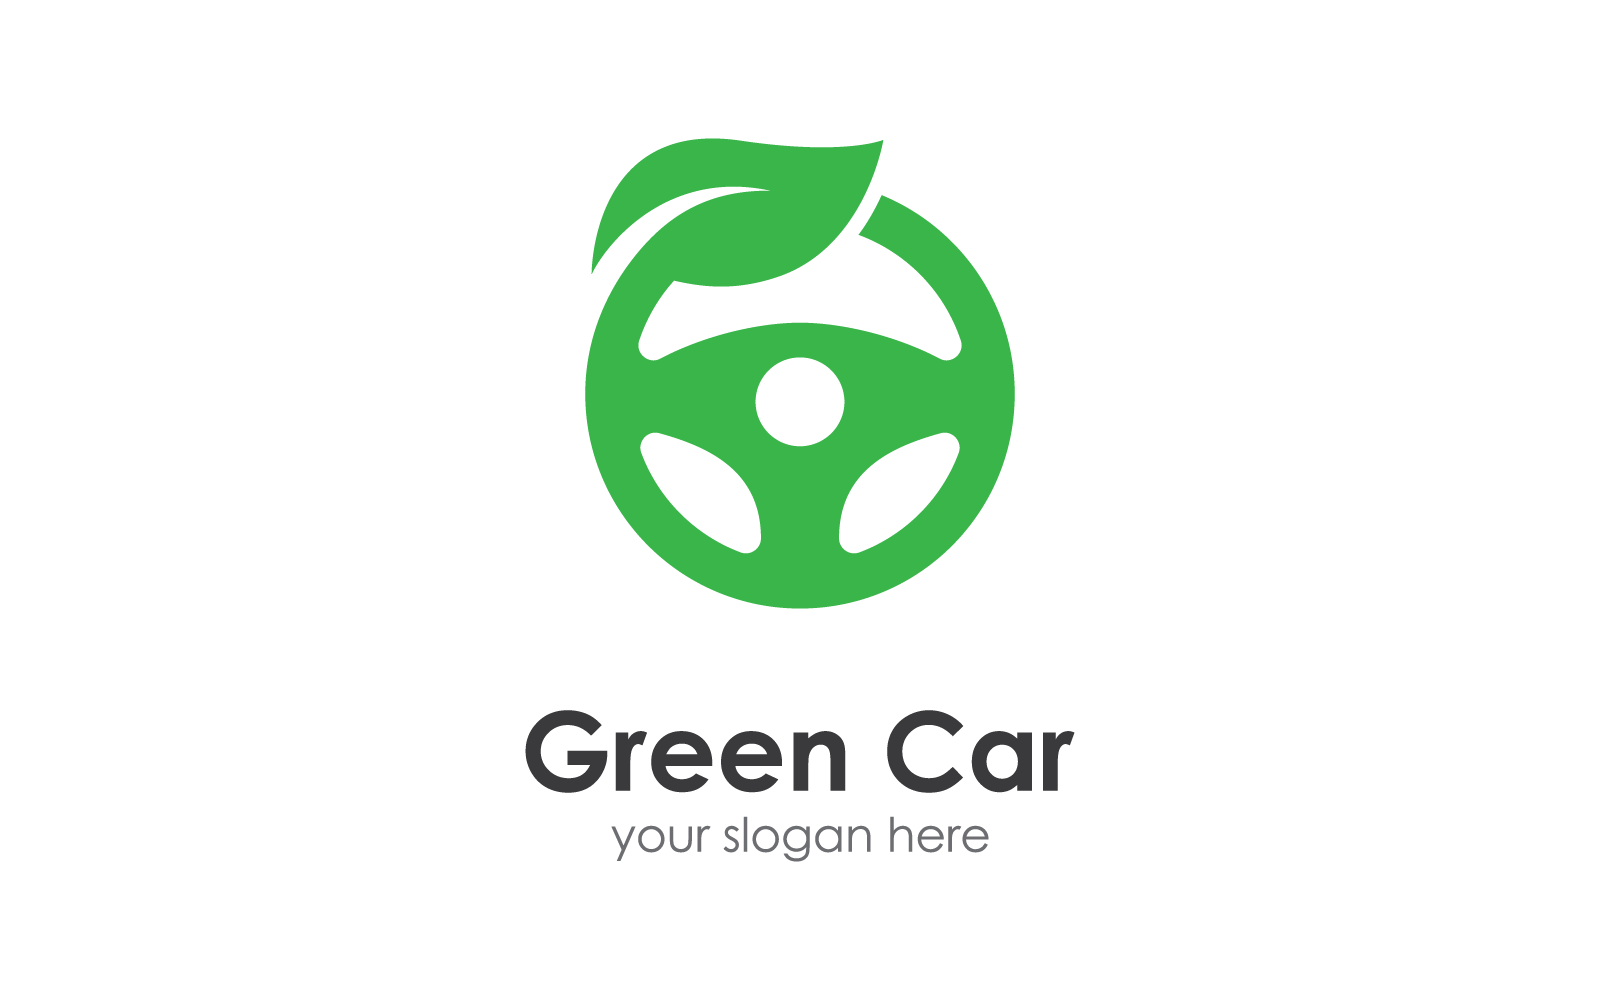 Steering wheel green car logo vector template Logo Template